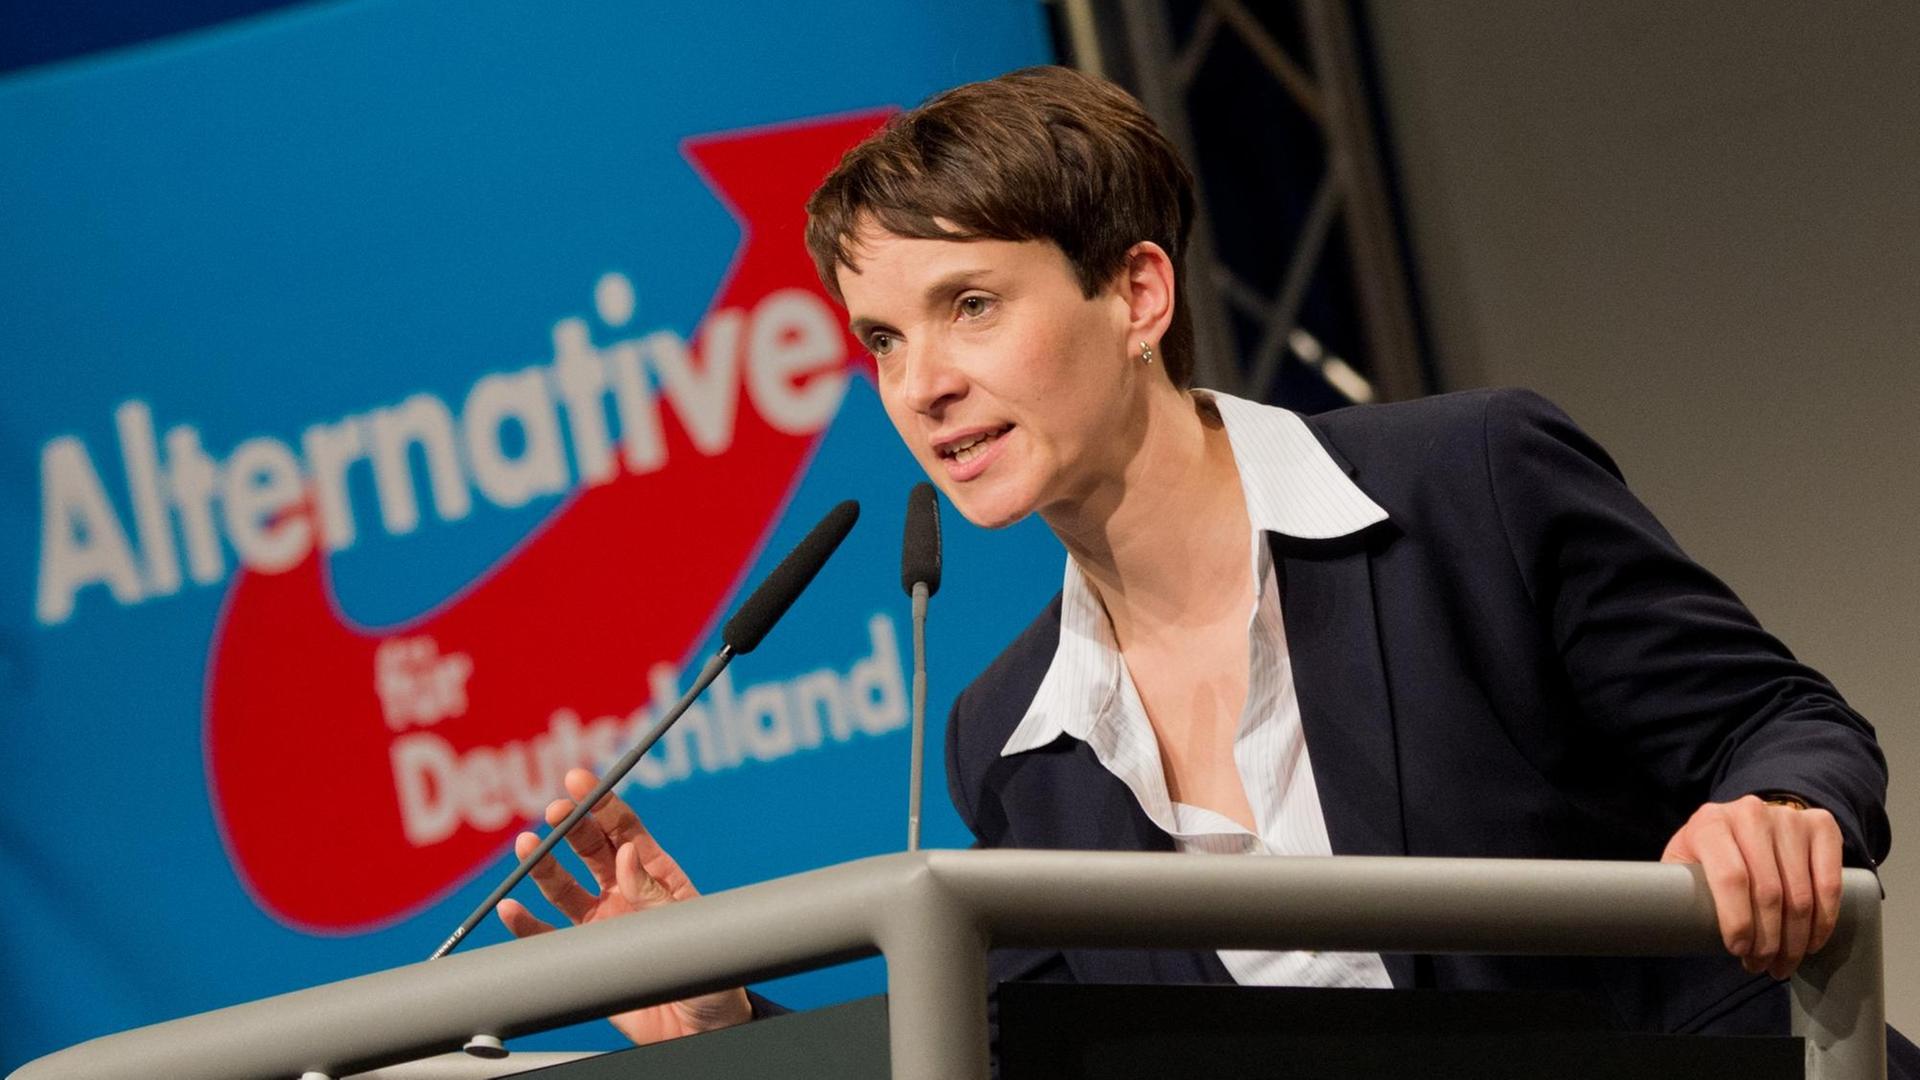 Zu sehen ist die AfD-Vorsitzende Frauke Petry am Rednerpult, hinter ihr der blau-weiß-rote Schriftzug der Partei.